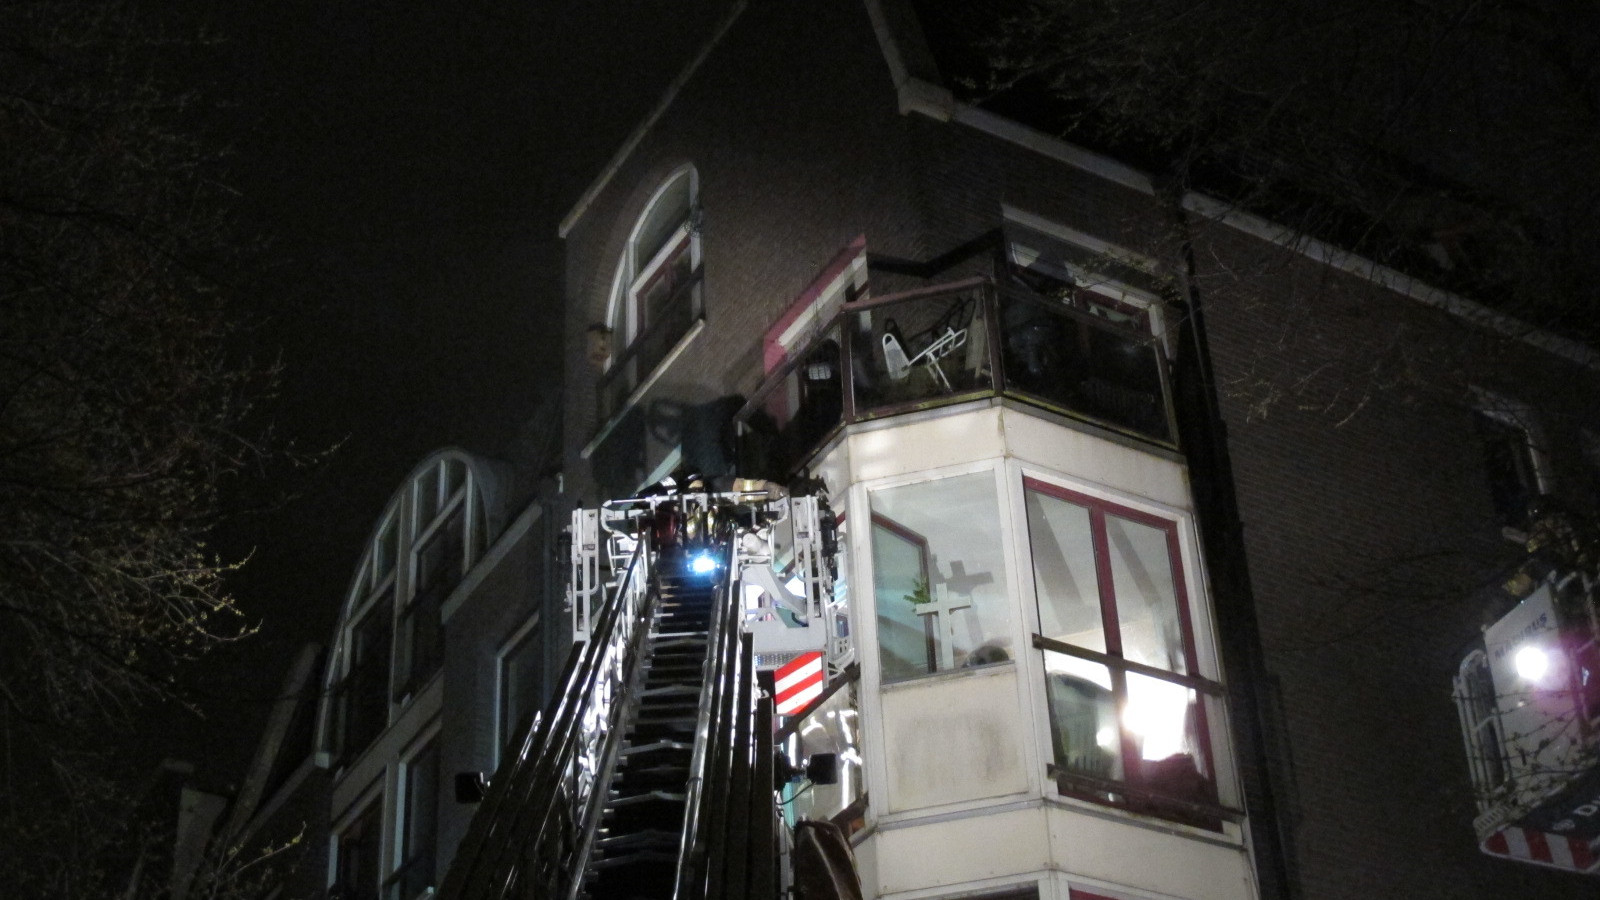 Vijf mensen uit pand aan Amstel gered bij grote brand